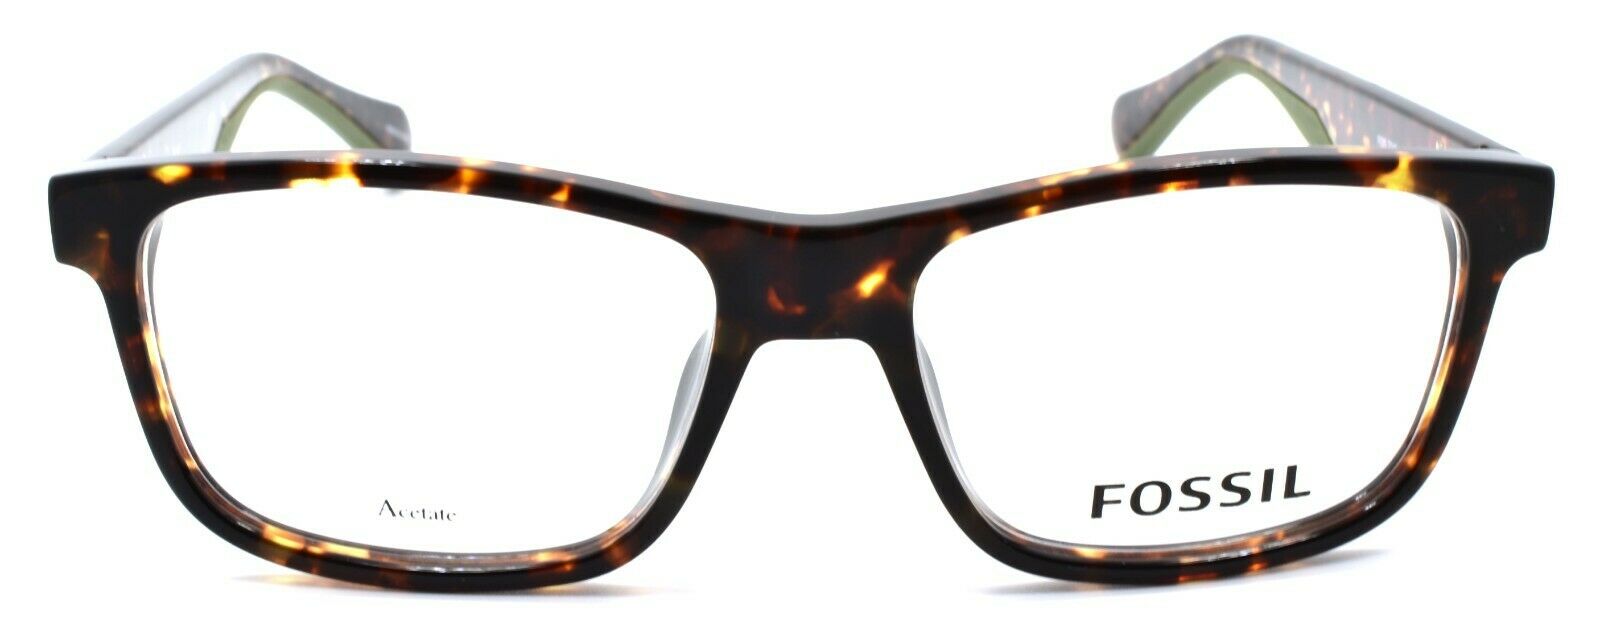 2-Fossil FOS 7046 086 Men's Eyeglasses Frames 52-16-145 Dark Havana-716736131139-IKSpecs